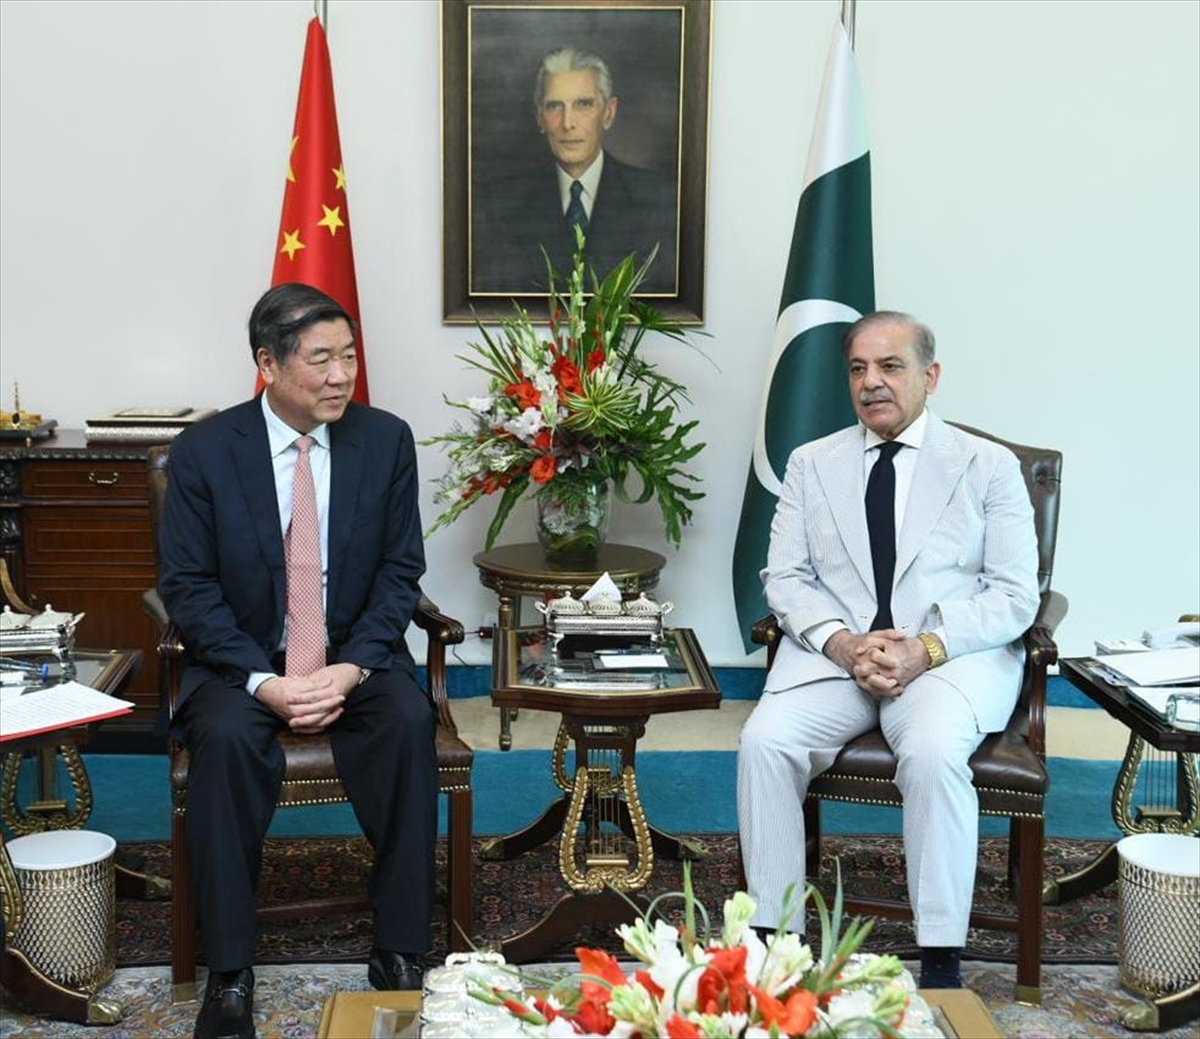 Çin-Pakistan Ekonomik Koridoru'nun 10. Yılında İslamabad Ve Pekin  Ekonomik İşbirliğini Görüştü